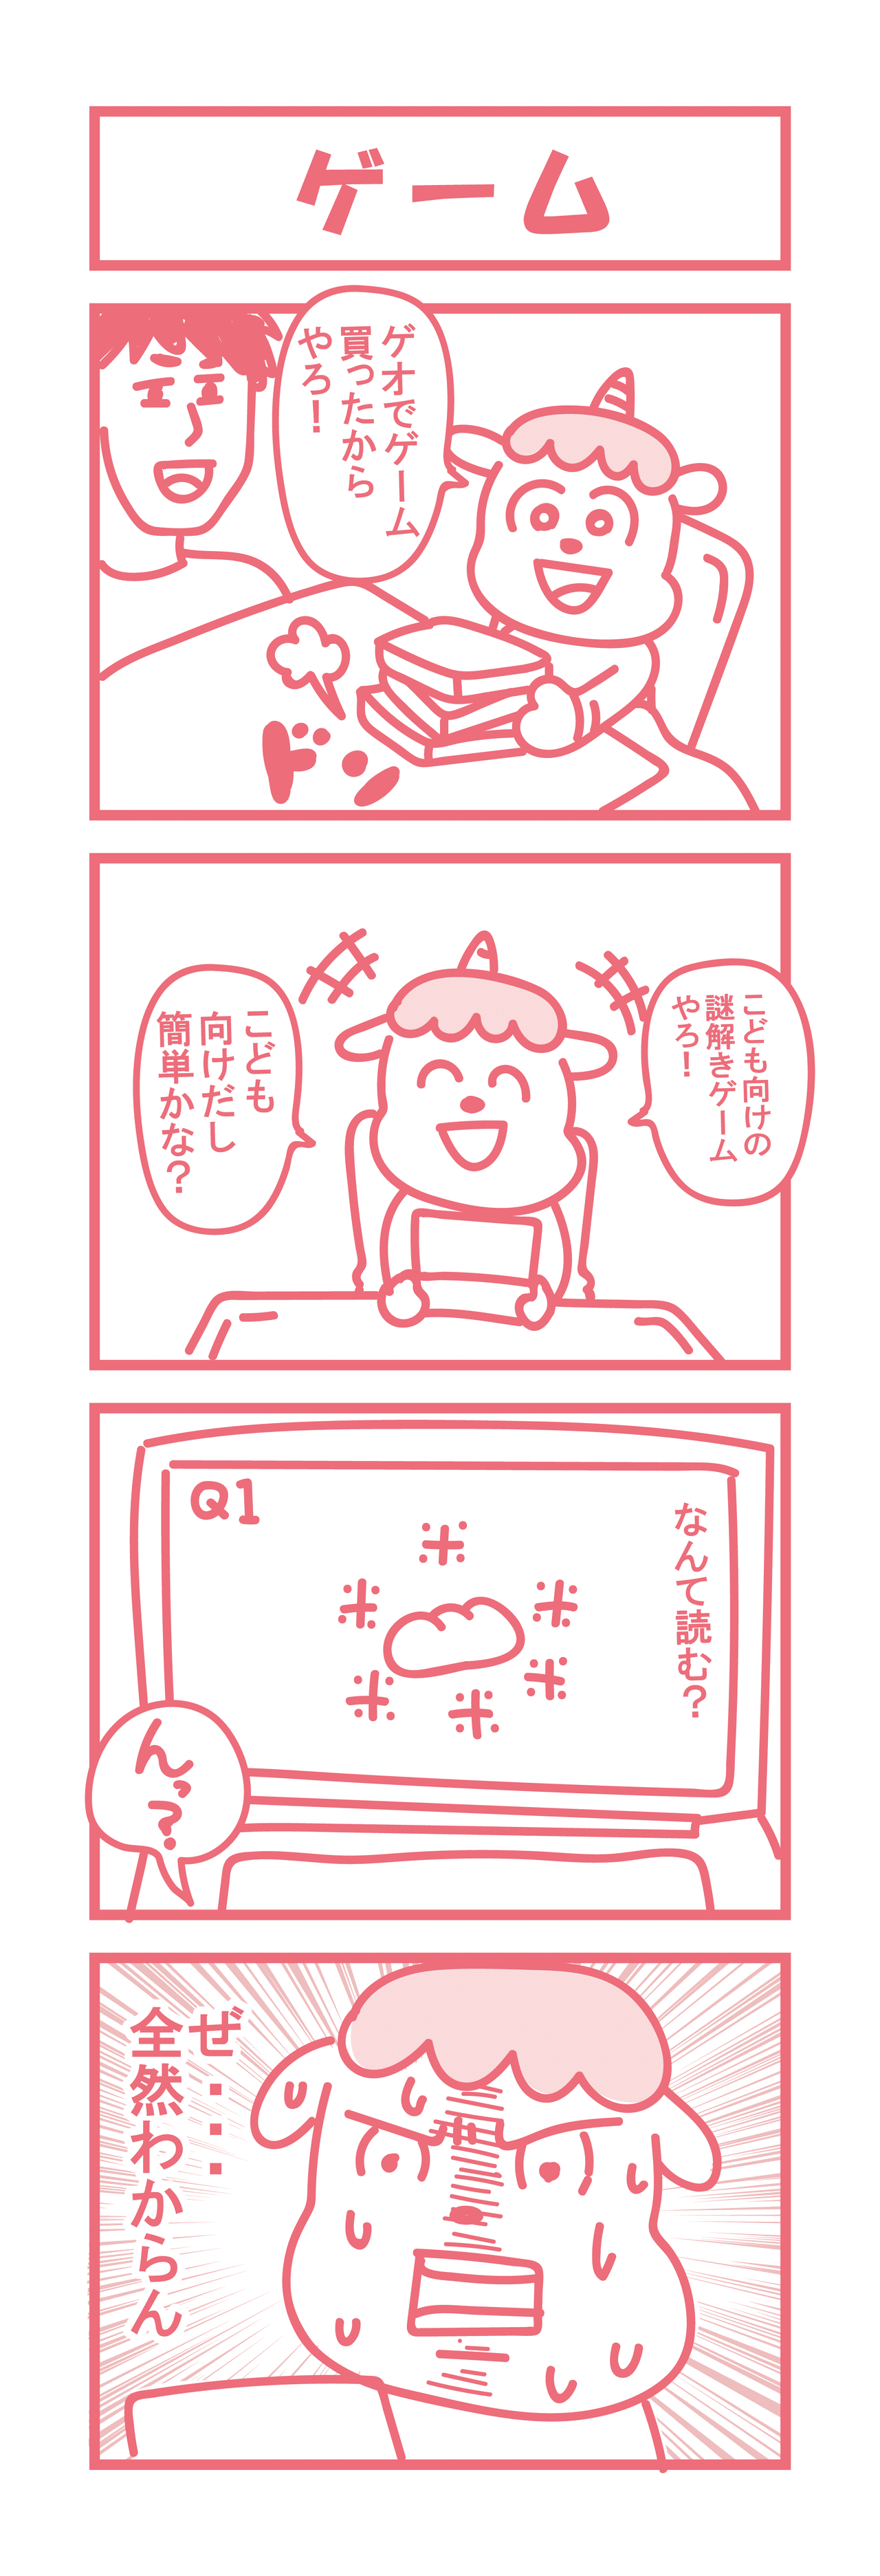 2漫画用0109-01